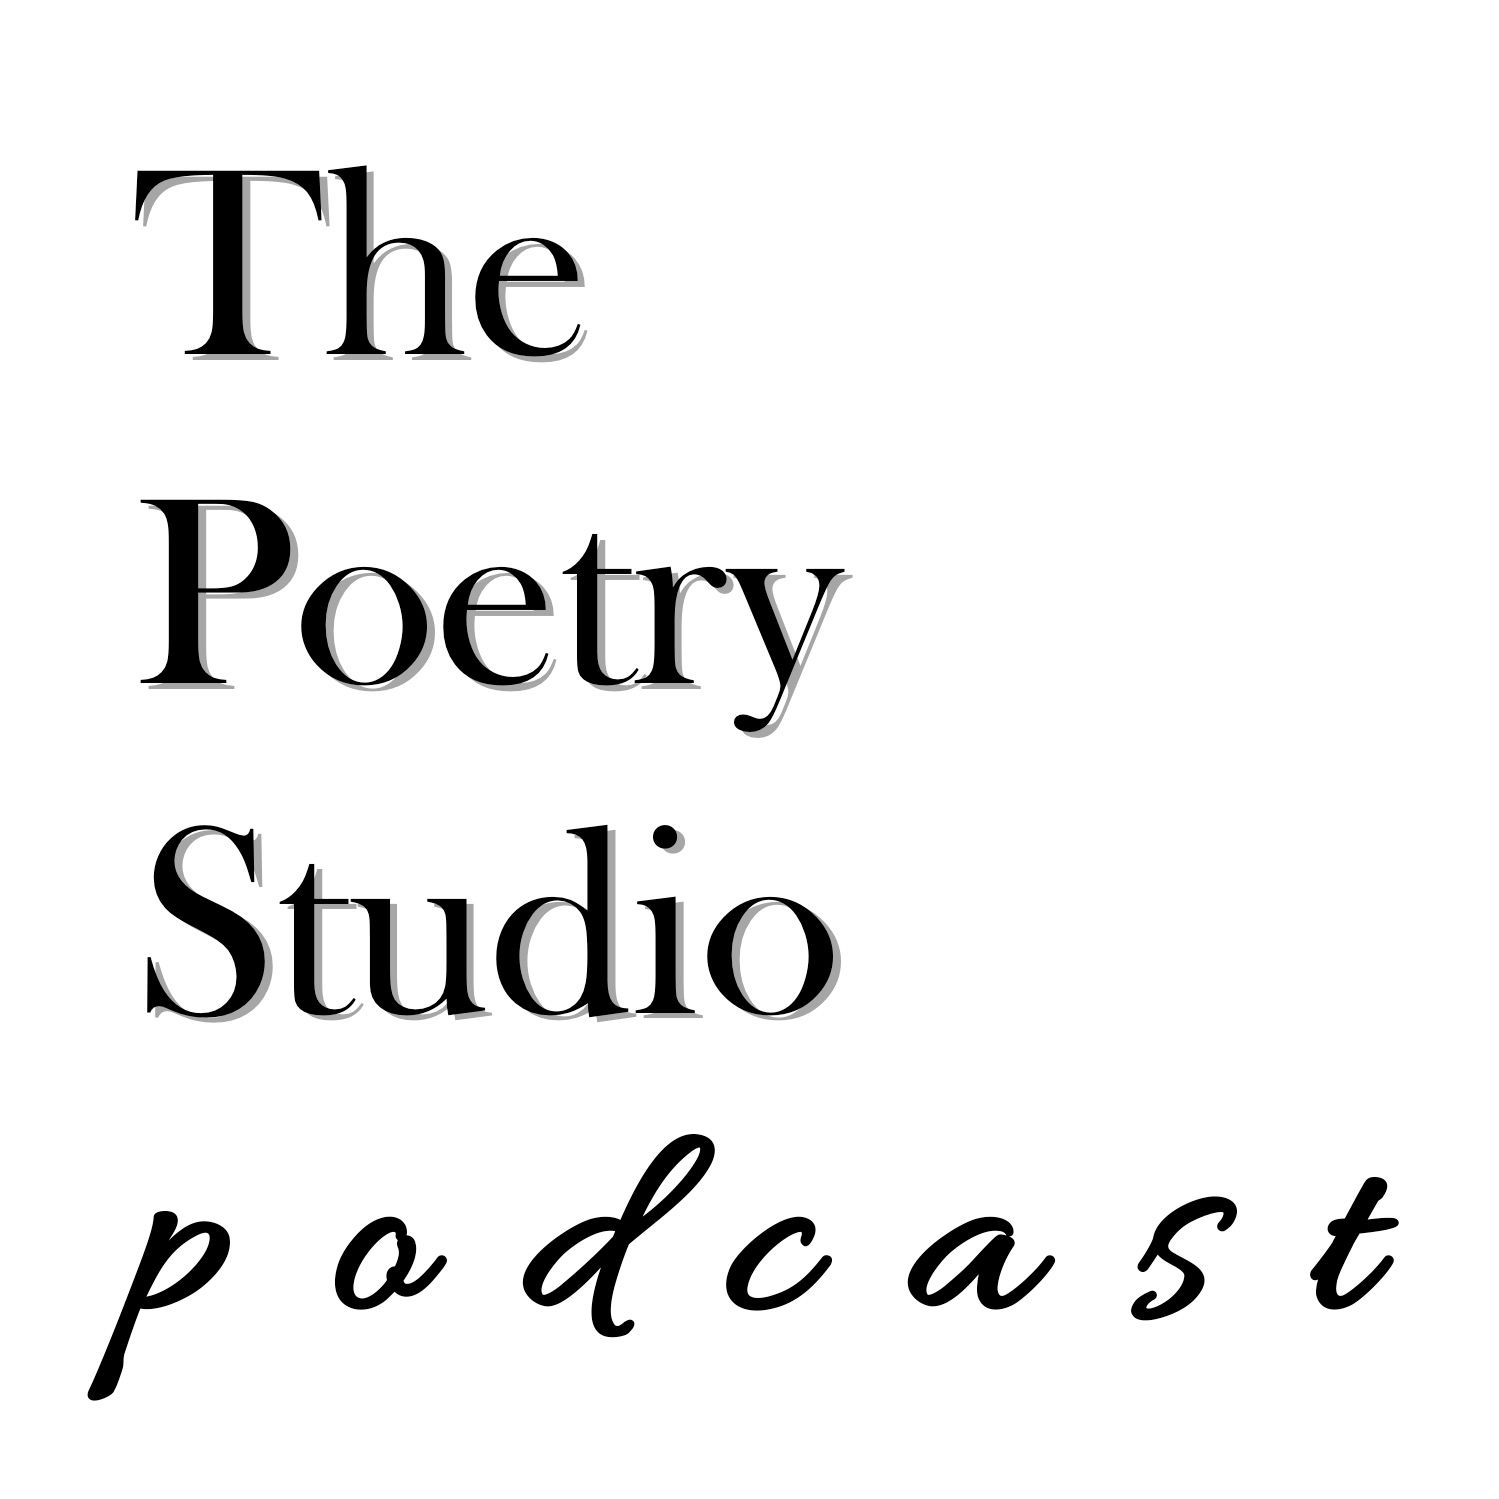 Poetry Studio Podcast